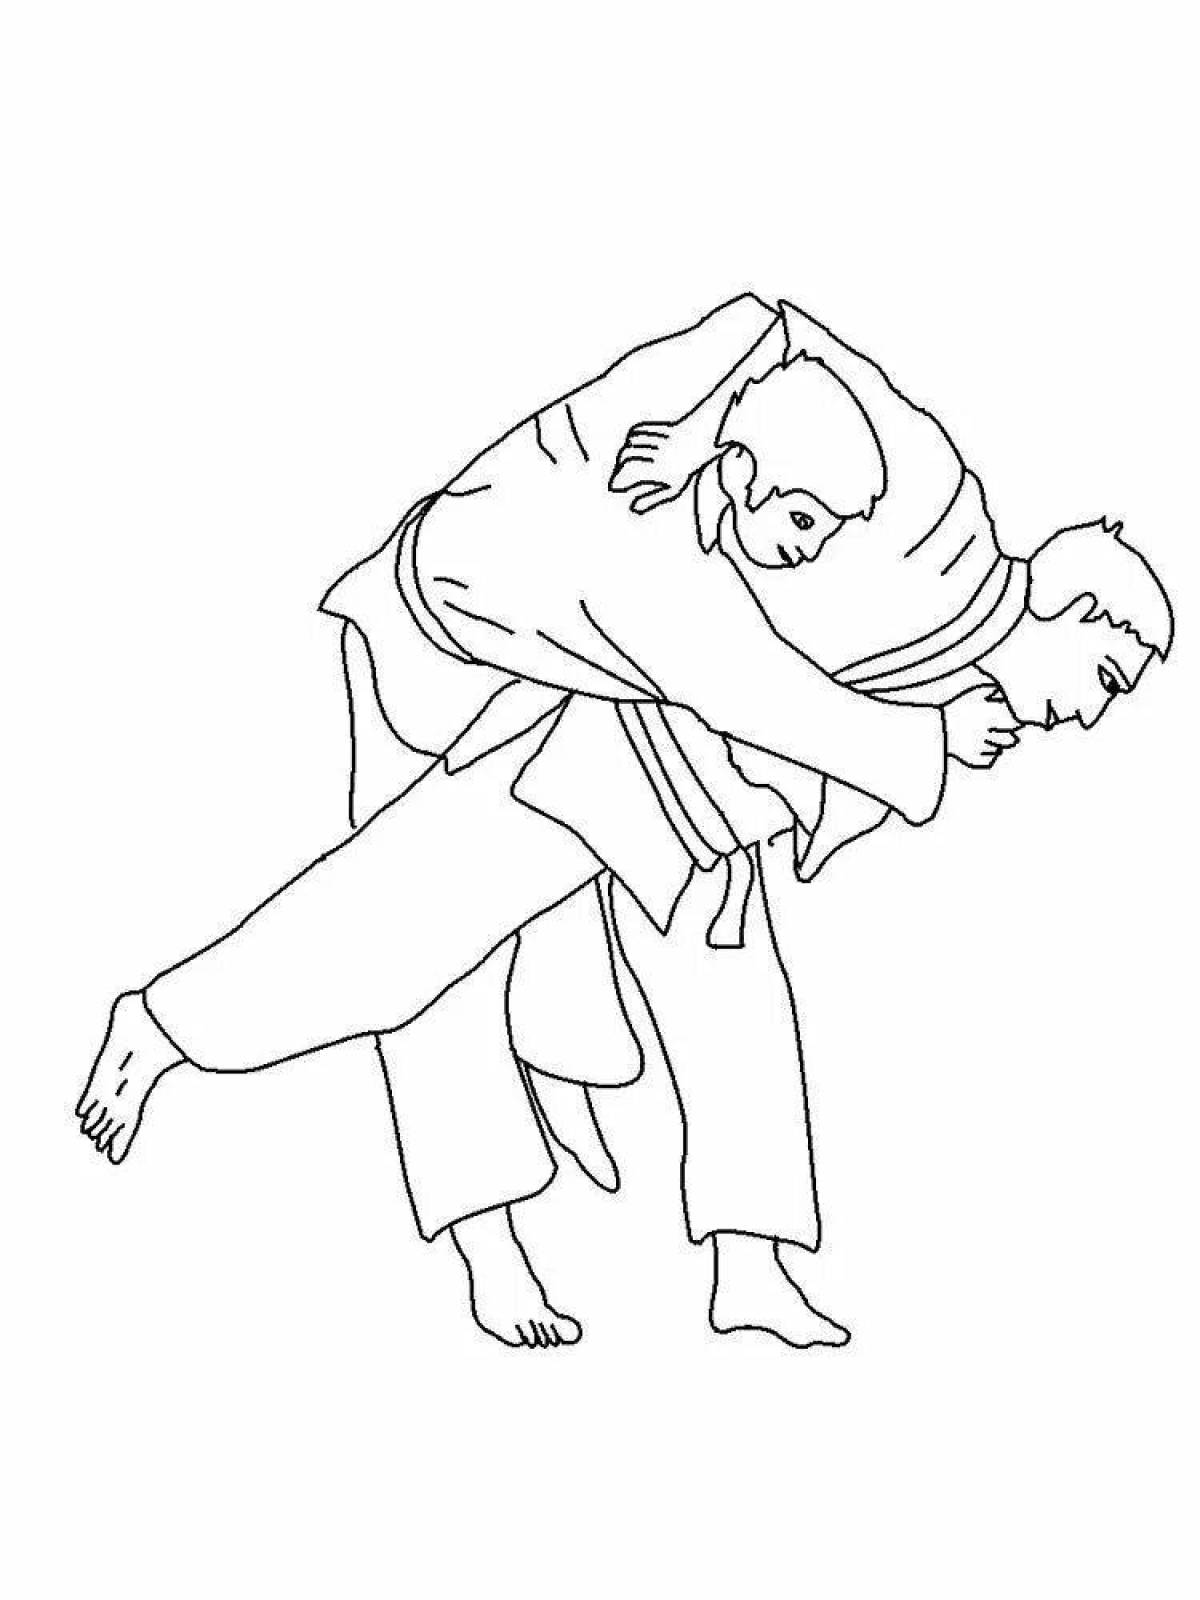 Playful jiu-jitsu coloring page